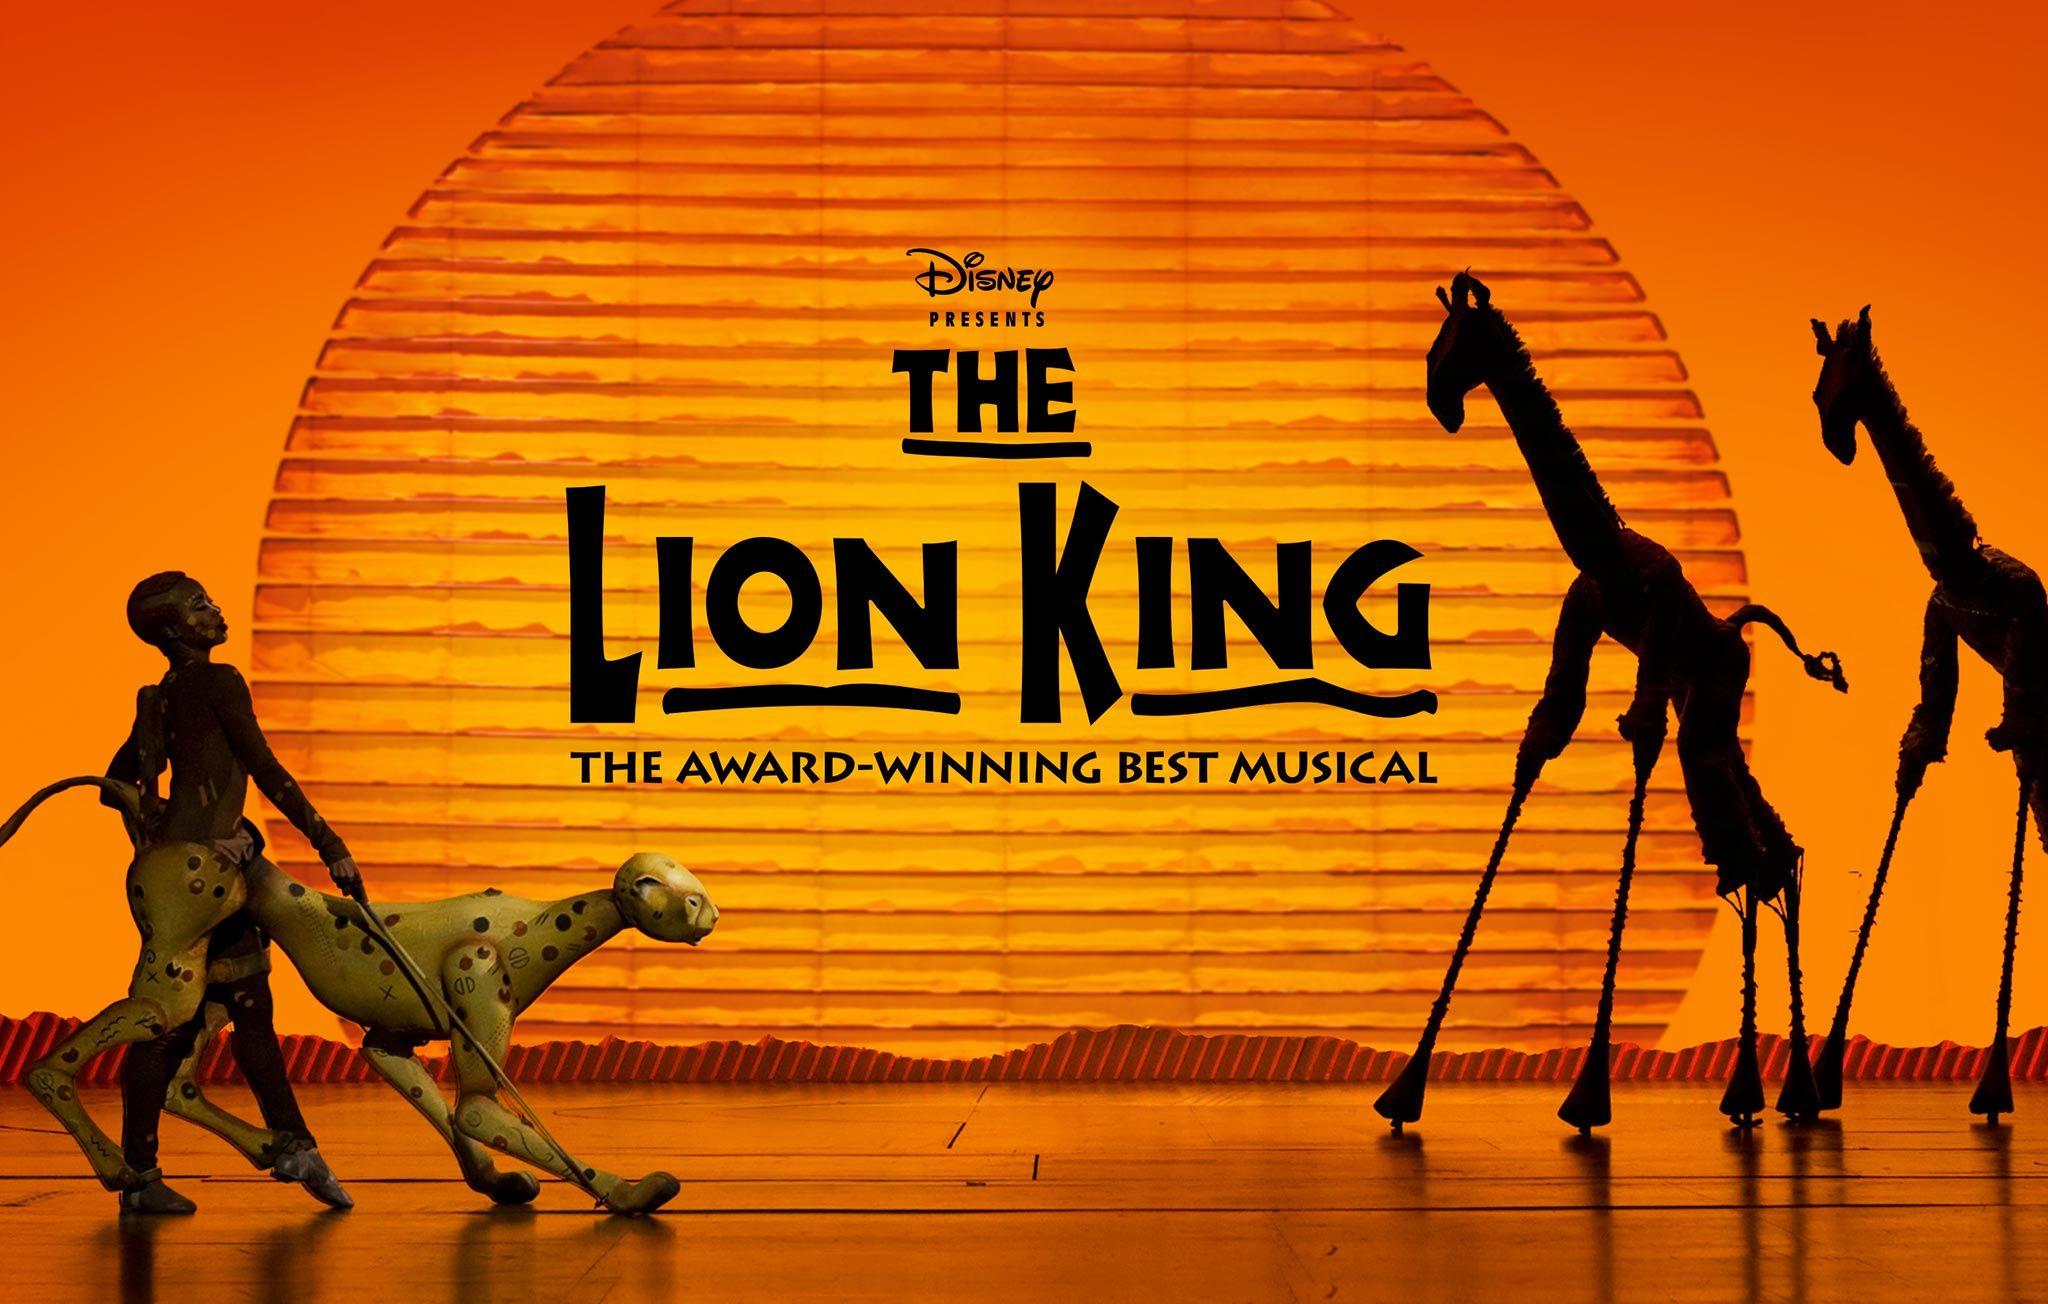 Disney The Lion King Logo - Disney THE LION KING. Award Winning Best Musical